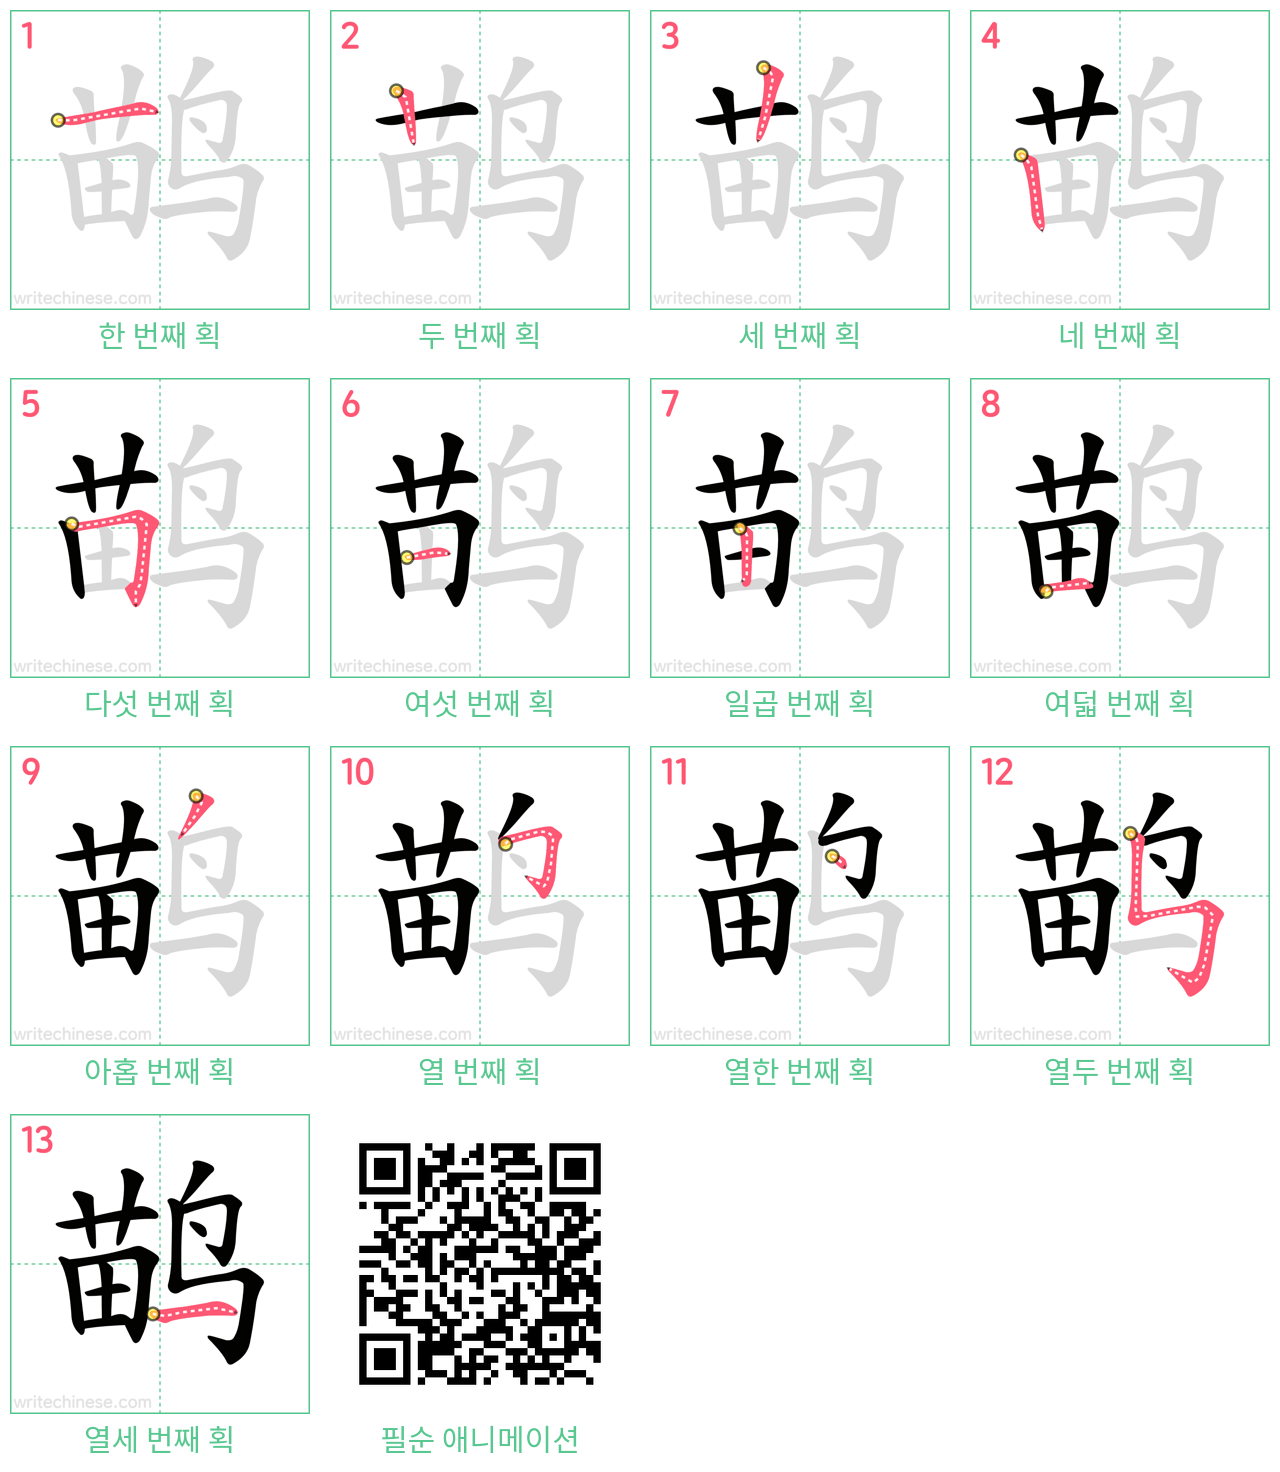 鹋 step-by-step stroke order diagrams